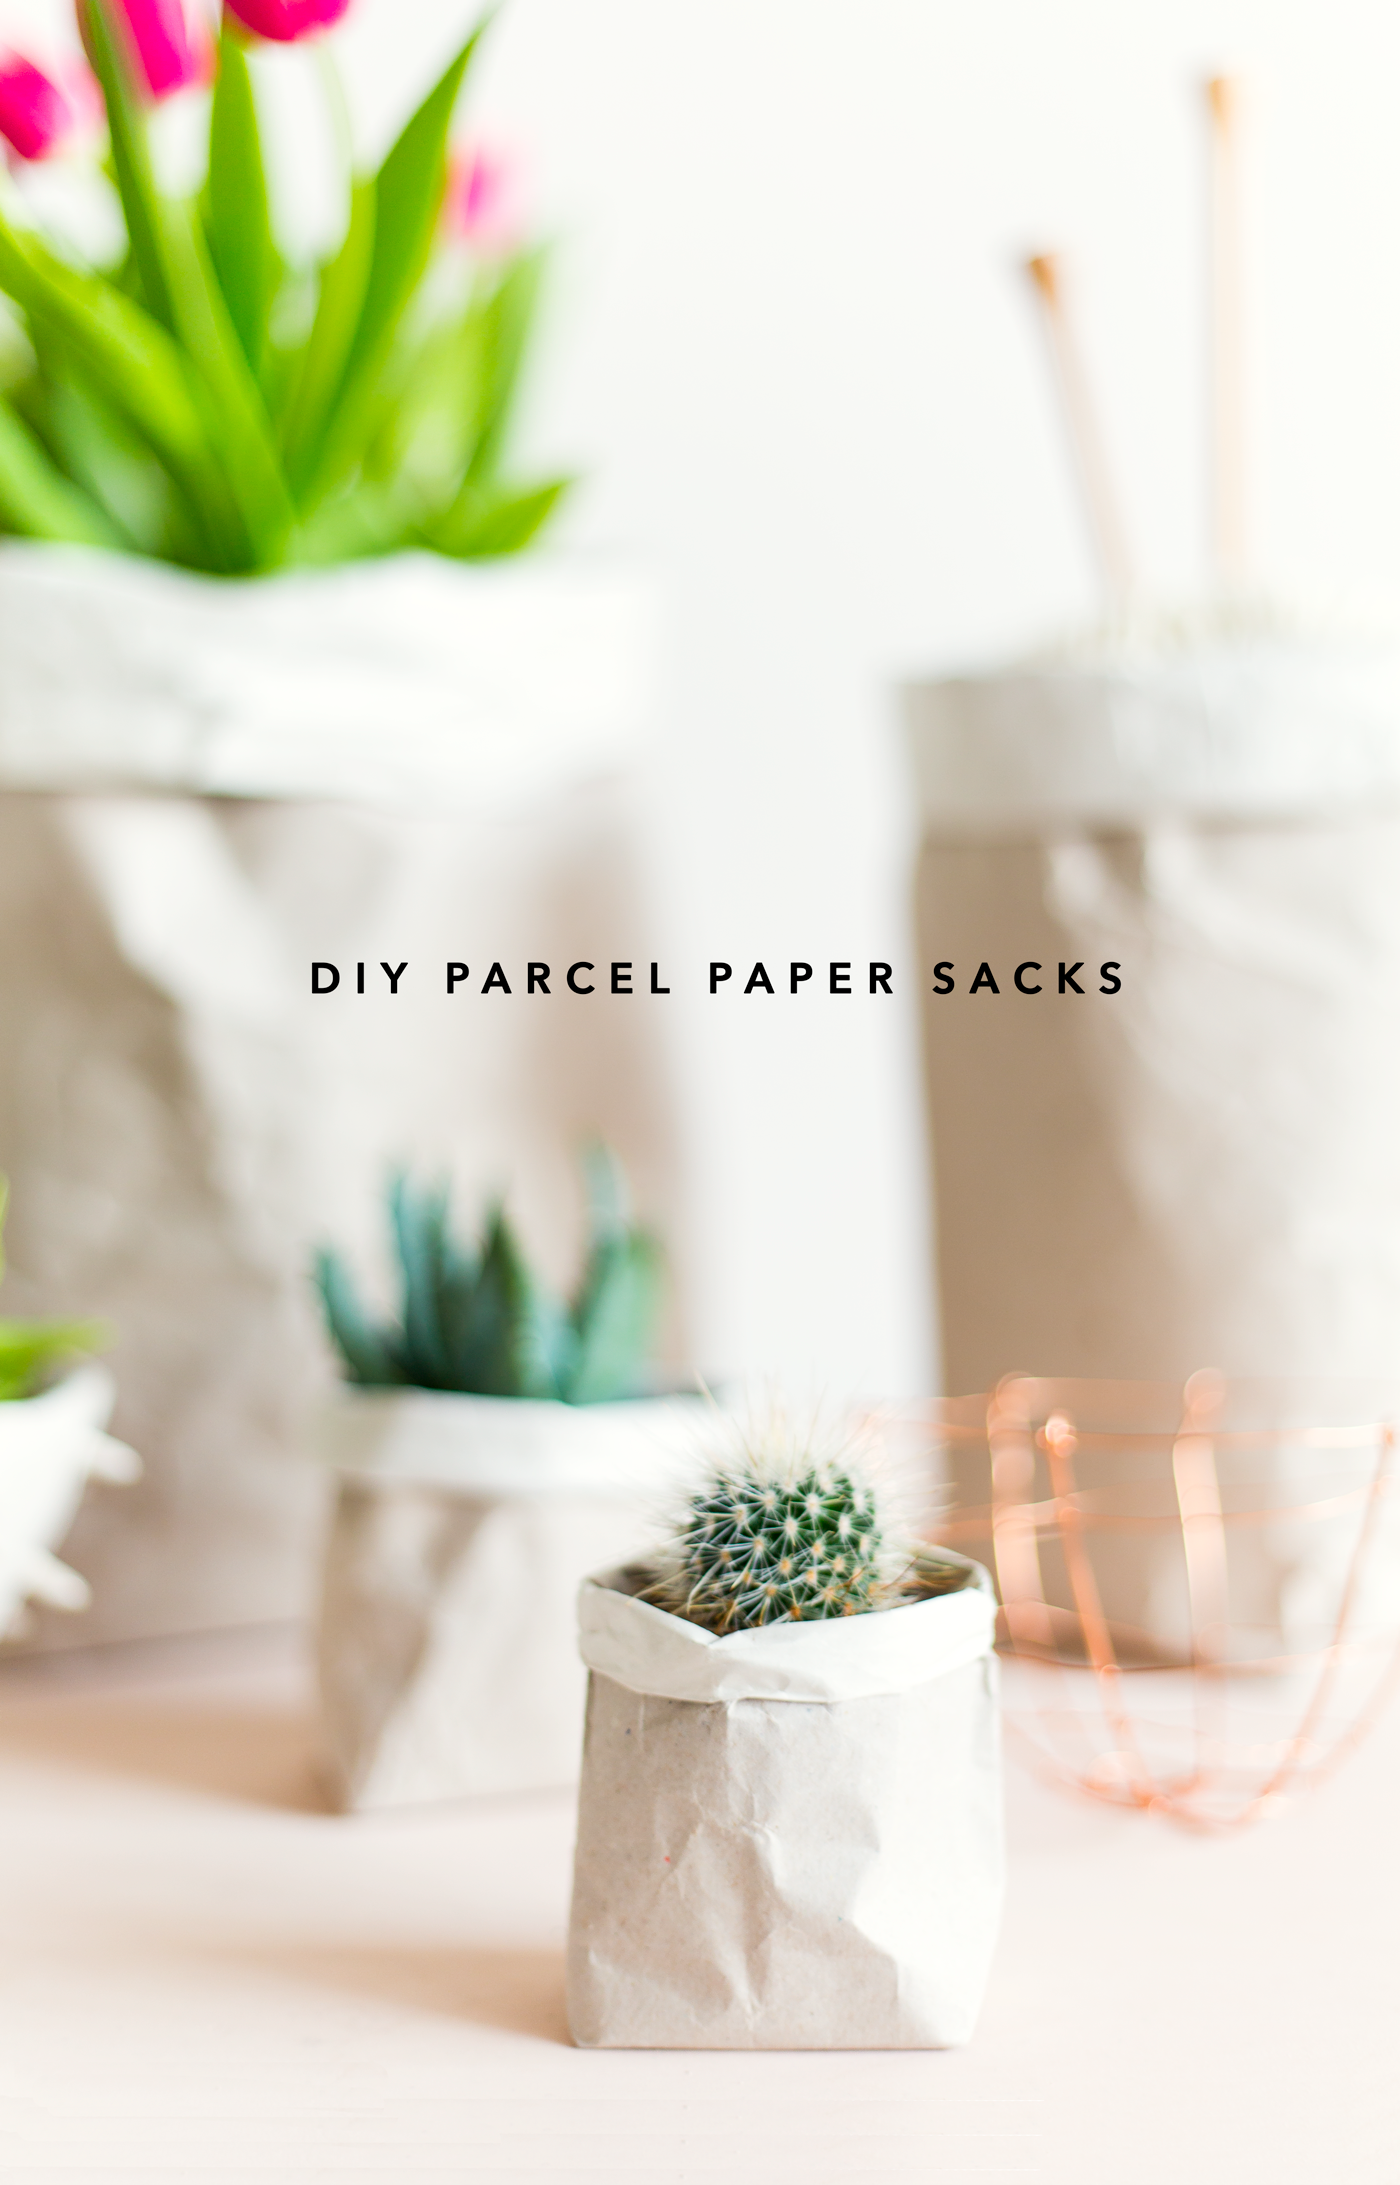 DIY-Packing-Paper-Sack-Planters-Tutorial-_-@fallfordiy-1